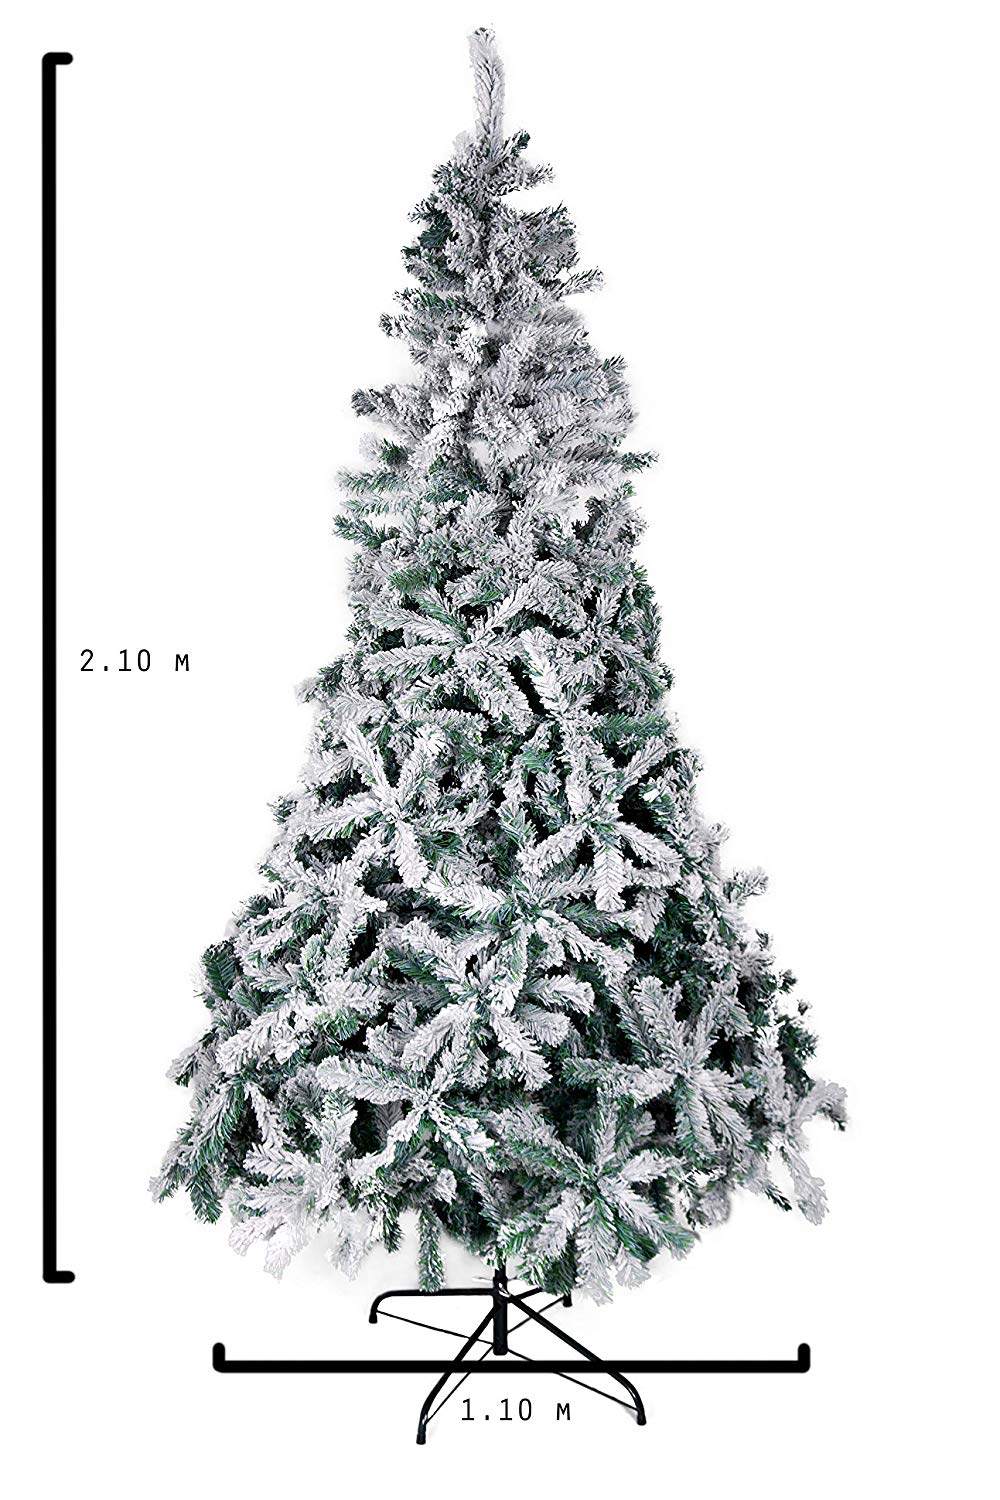 Árbol de Navidad 2019 blanco: ideas para decorarlo hermoso y original |  Actitudfem